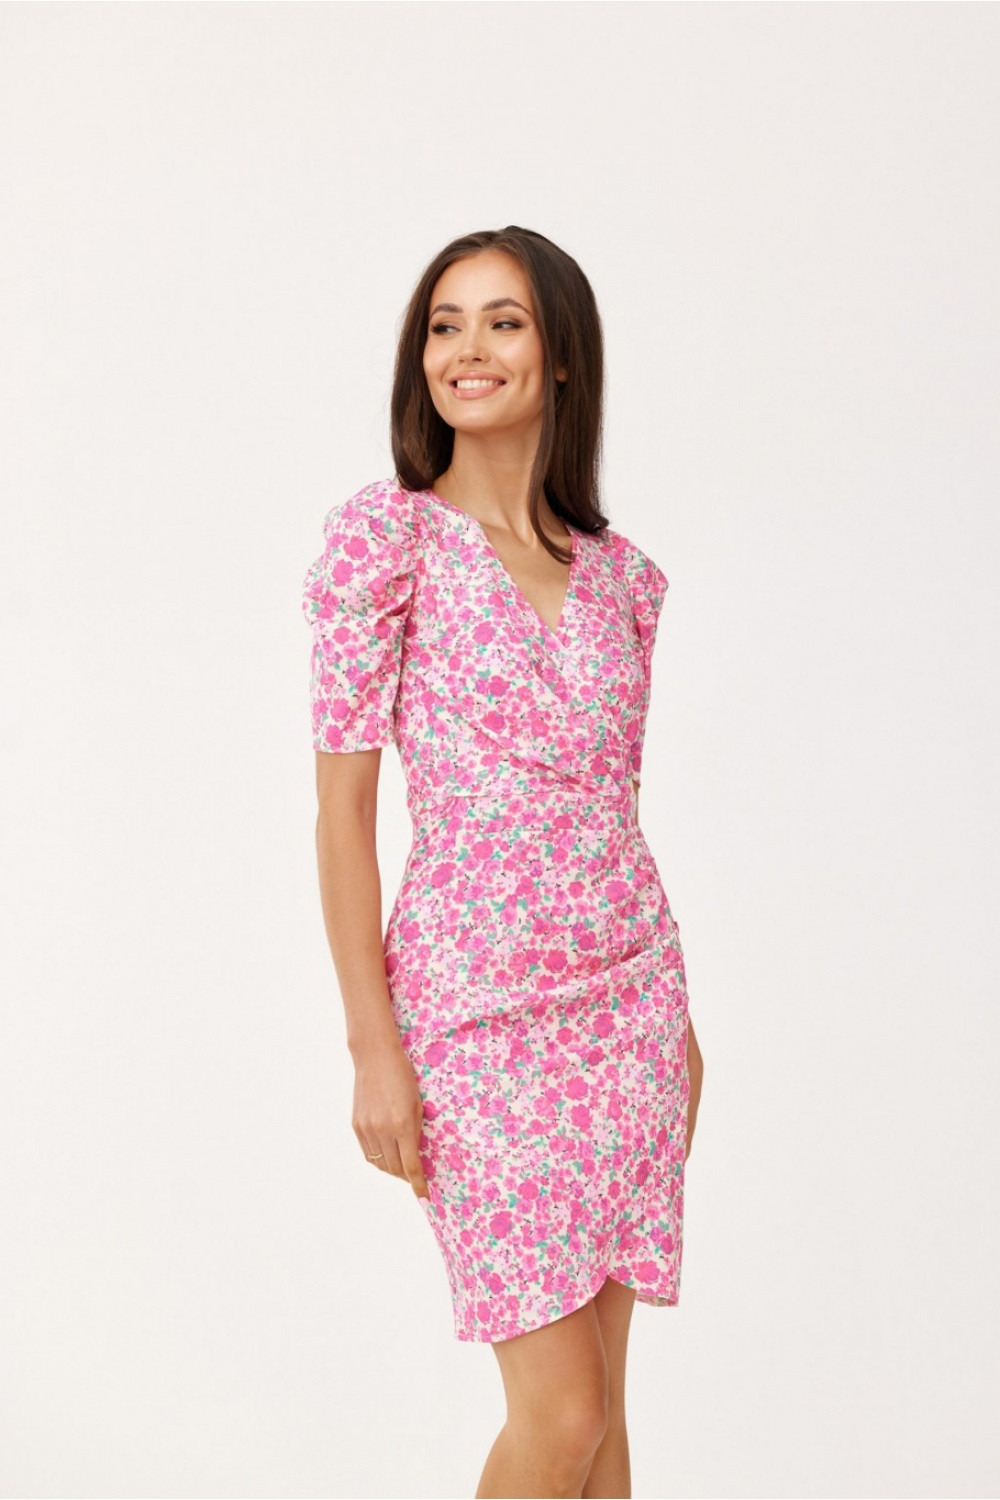 Dámské společenské šaty SUK0367-E46-46 růžovo/bílé - Roco Fashion 46